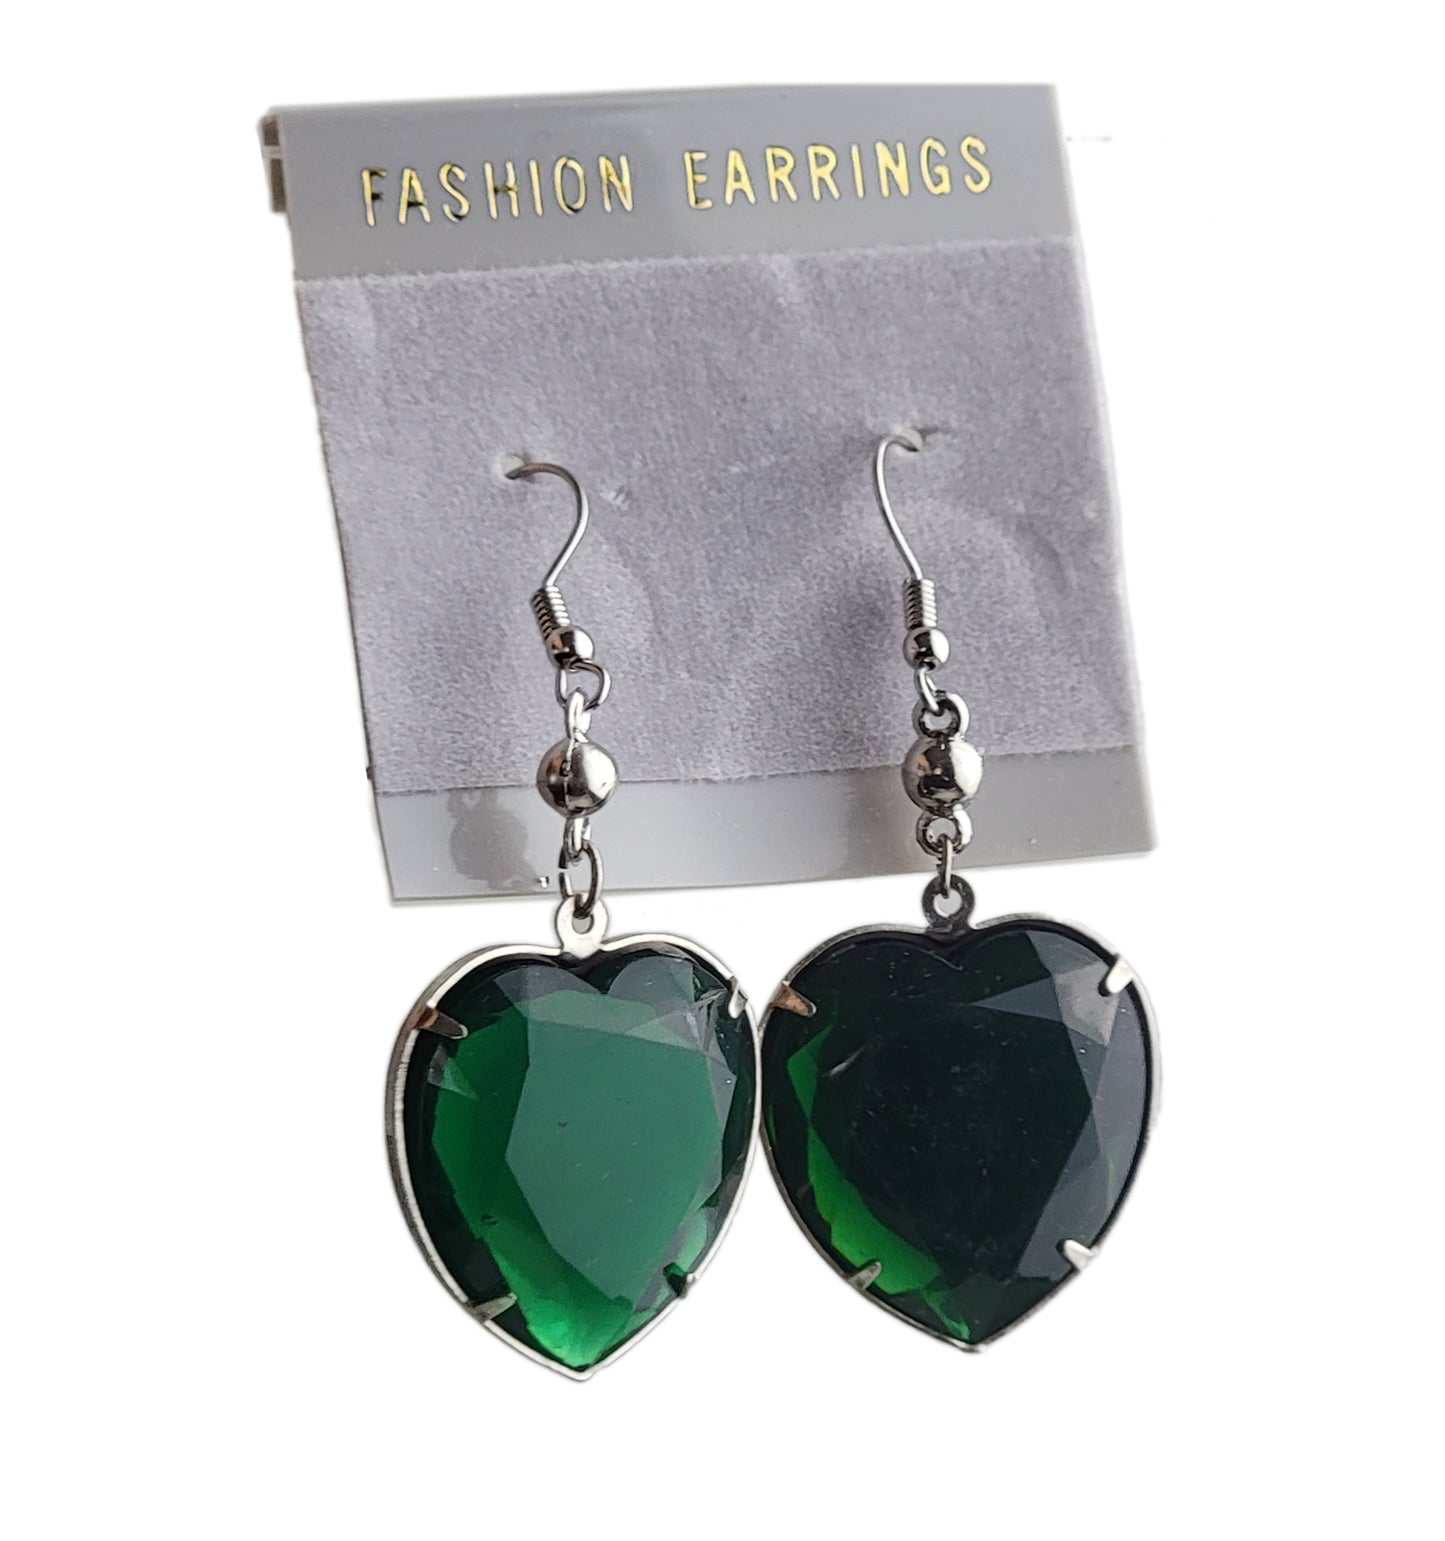 Oversized Large Jewel Faux Crystal Heart Earrings 2 1/4" Silver Tone - Green